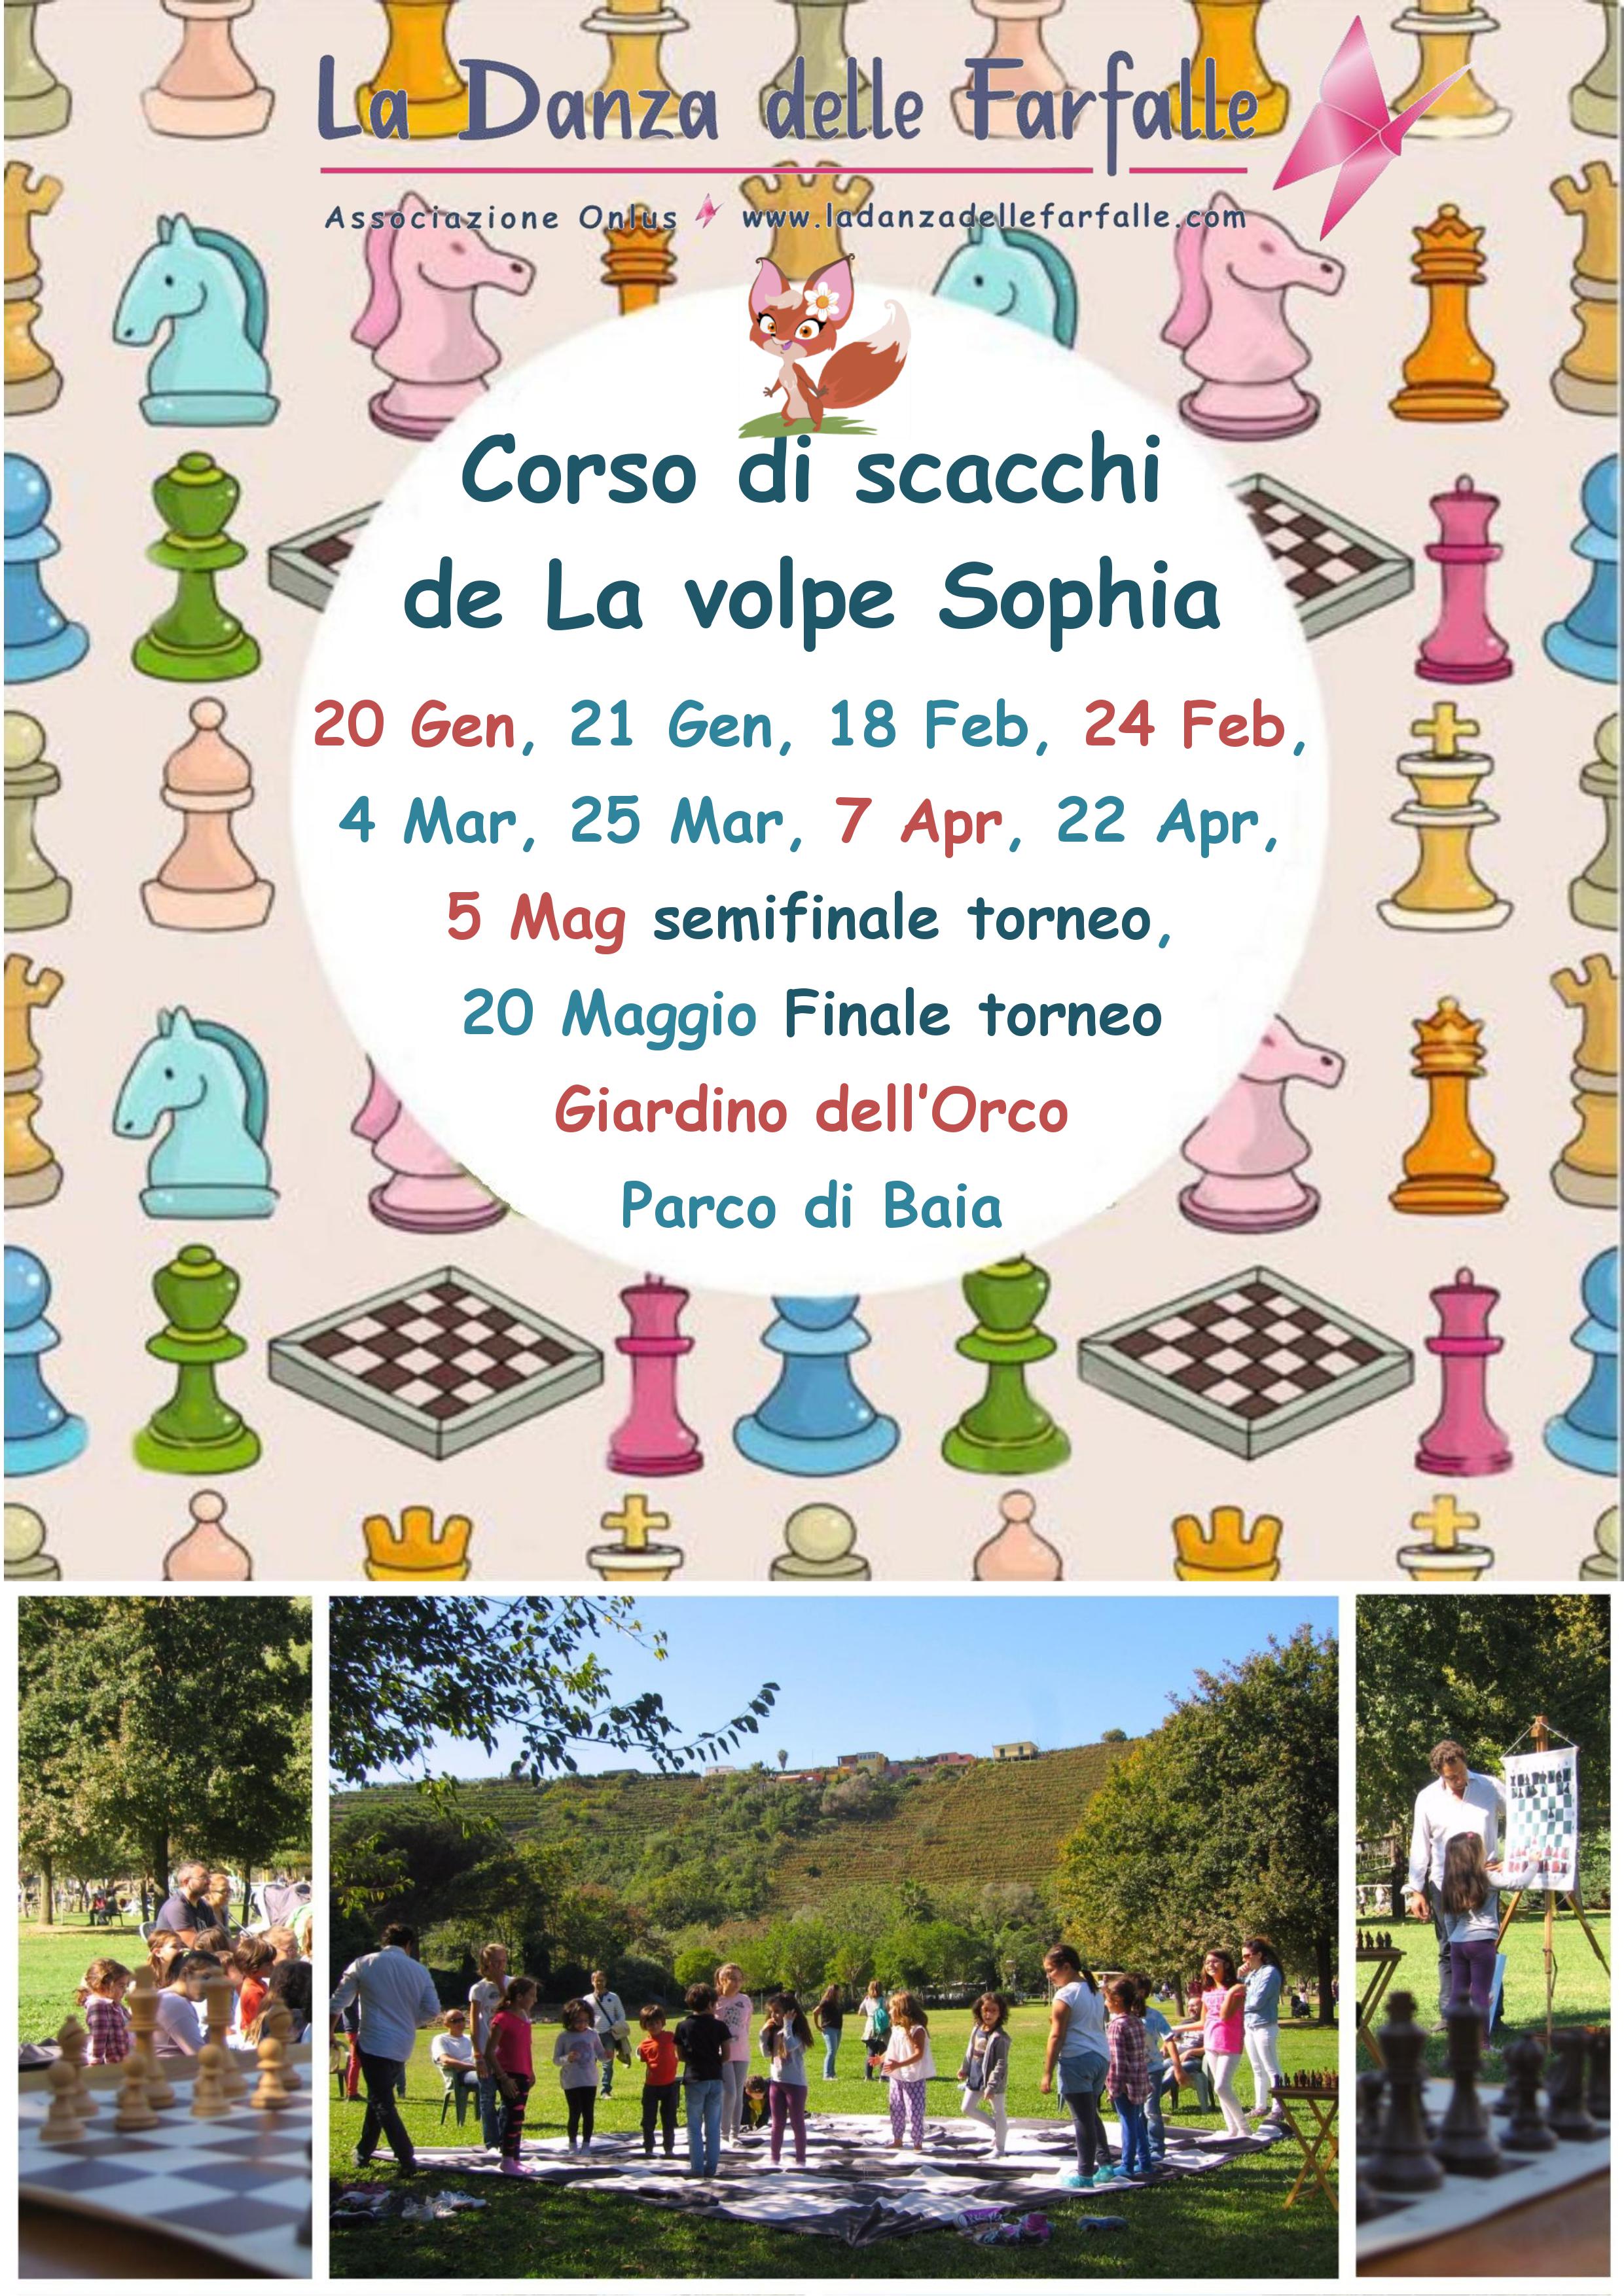 Corso di scacchi La volpe Sophia Parco di Baia locandina 2018